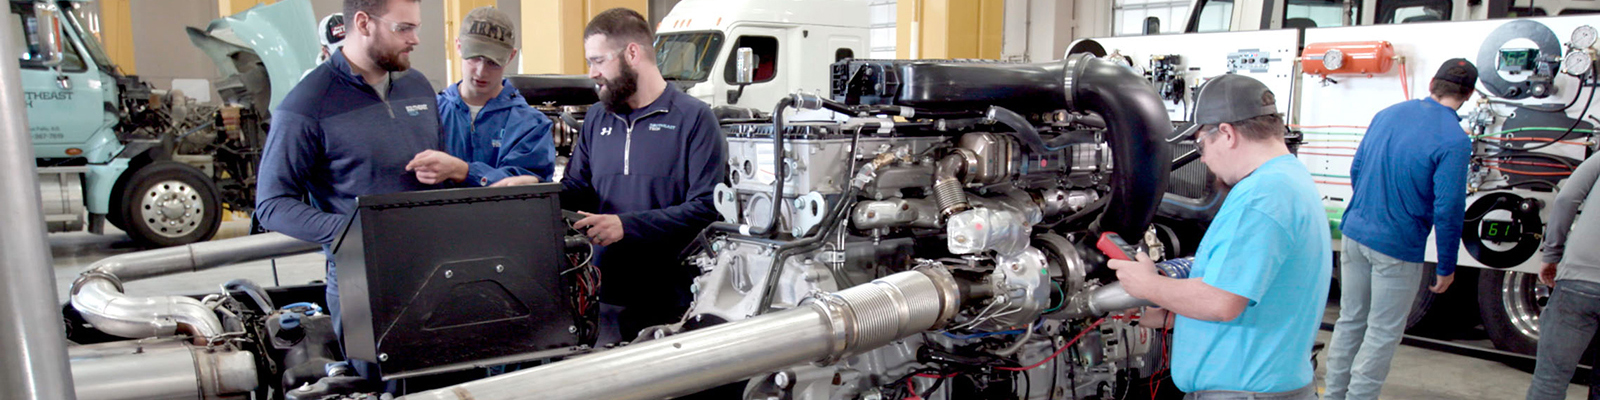 Students planning repair on large diesel engine in diesel lab